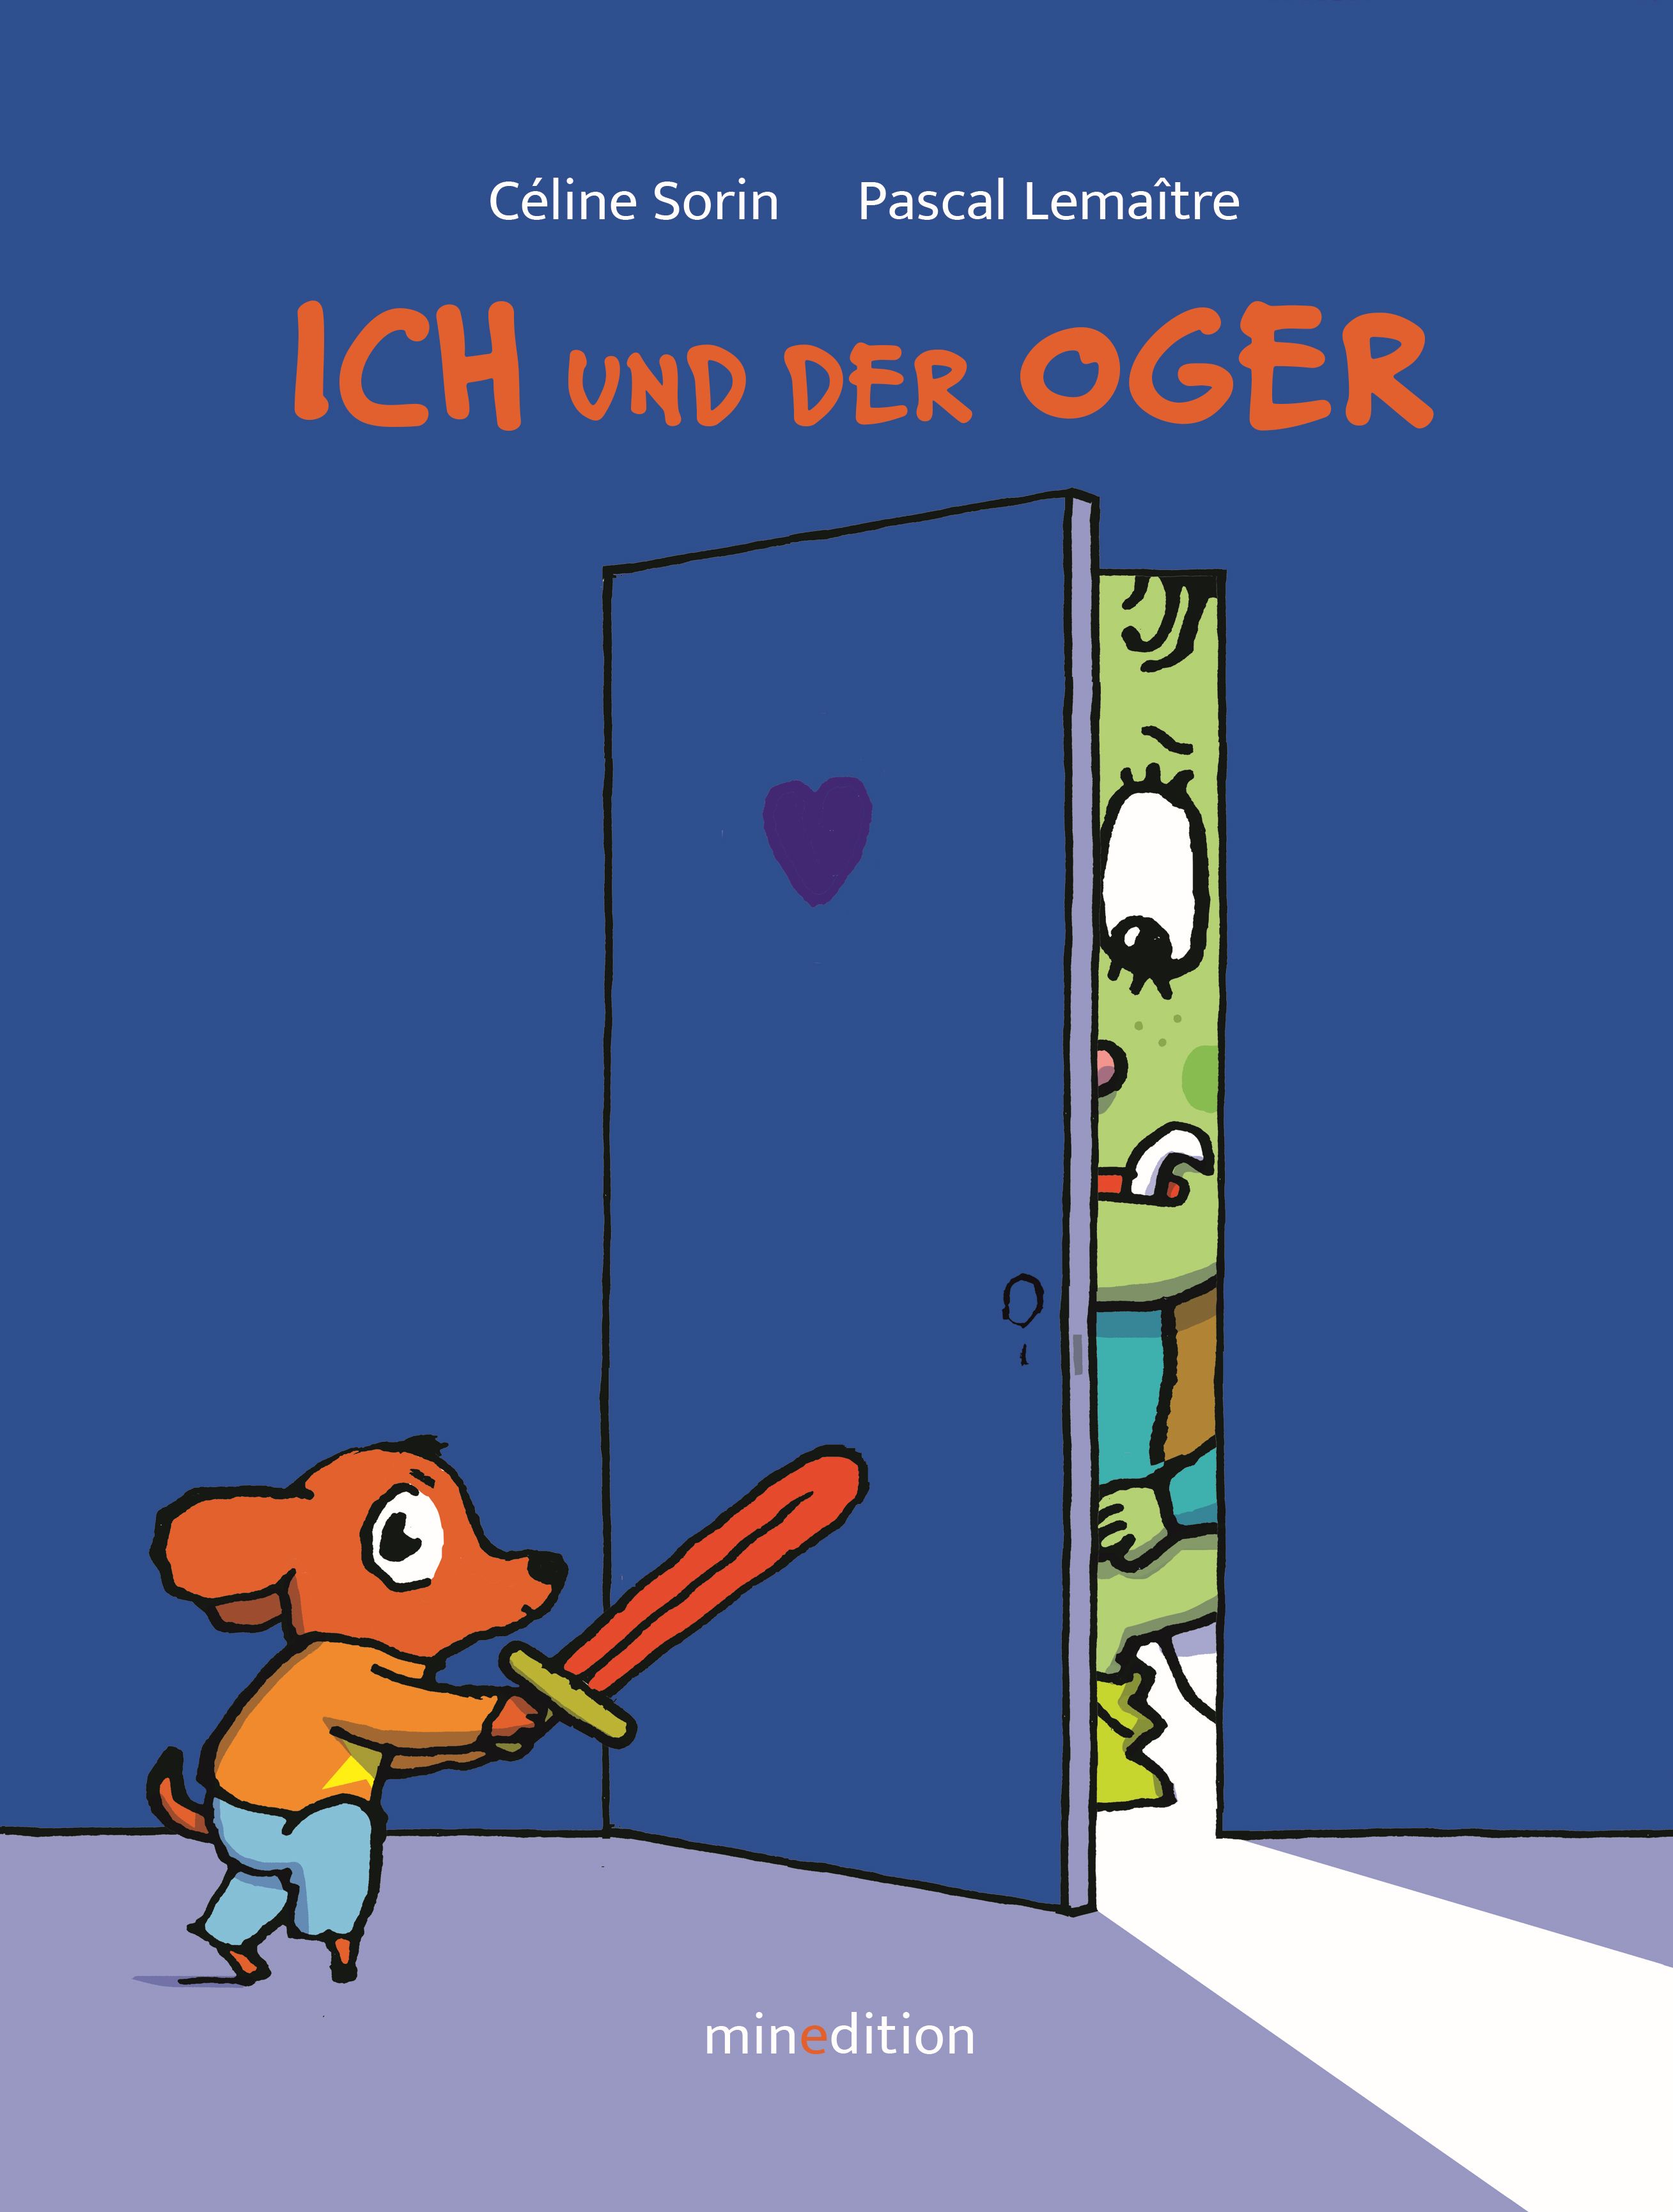 Buchcover "Ich und der Oger", minedition 